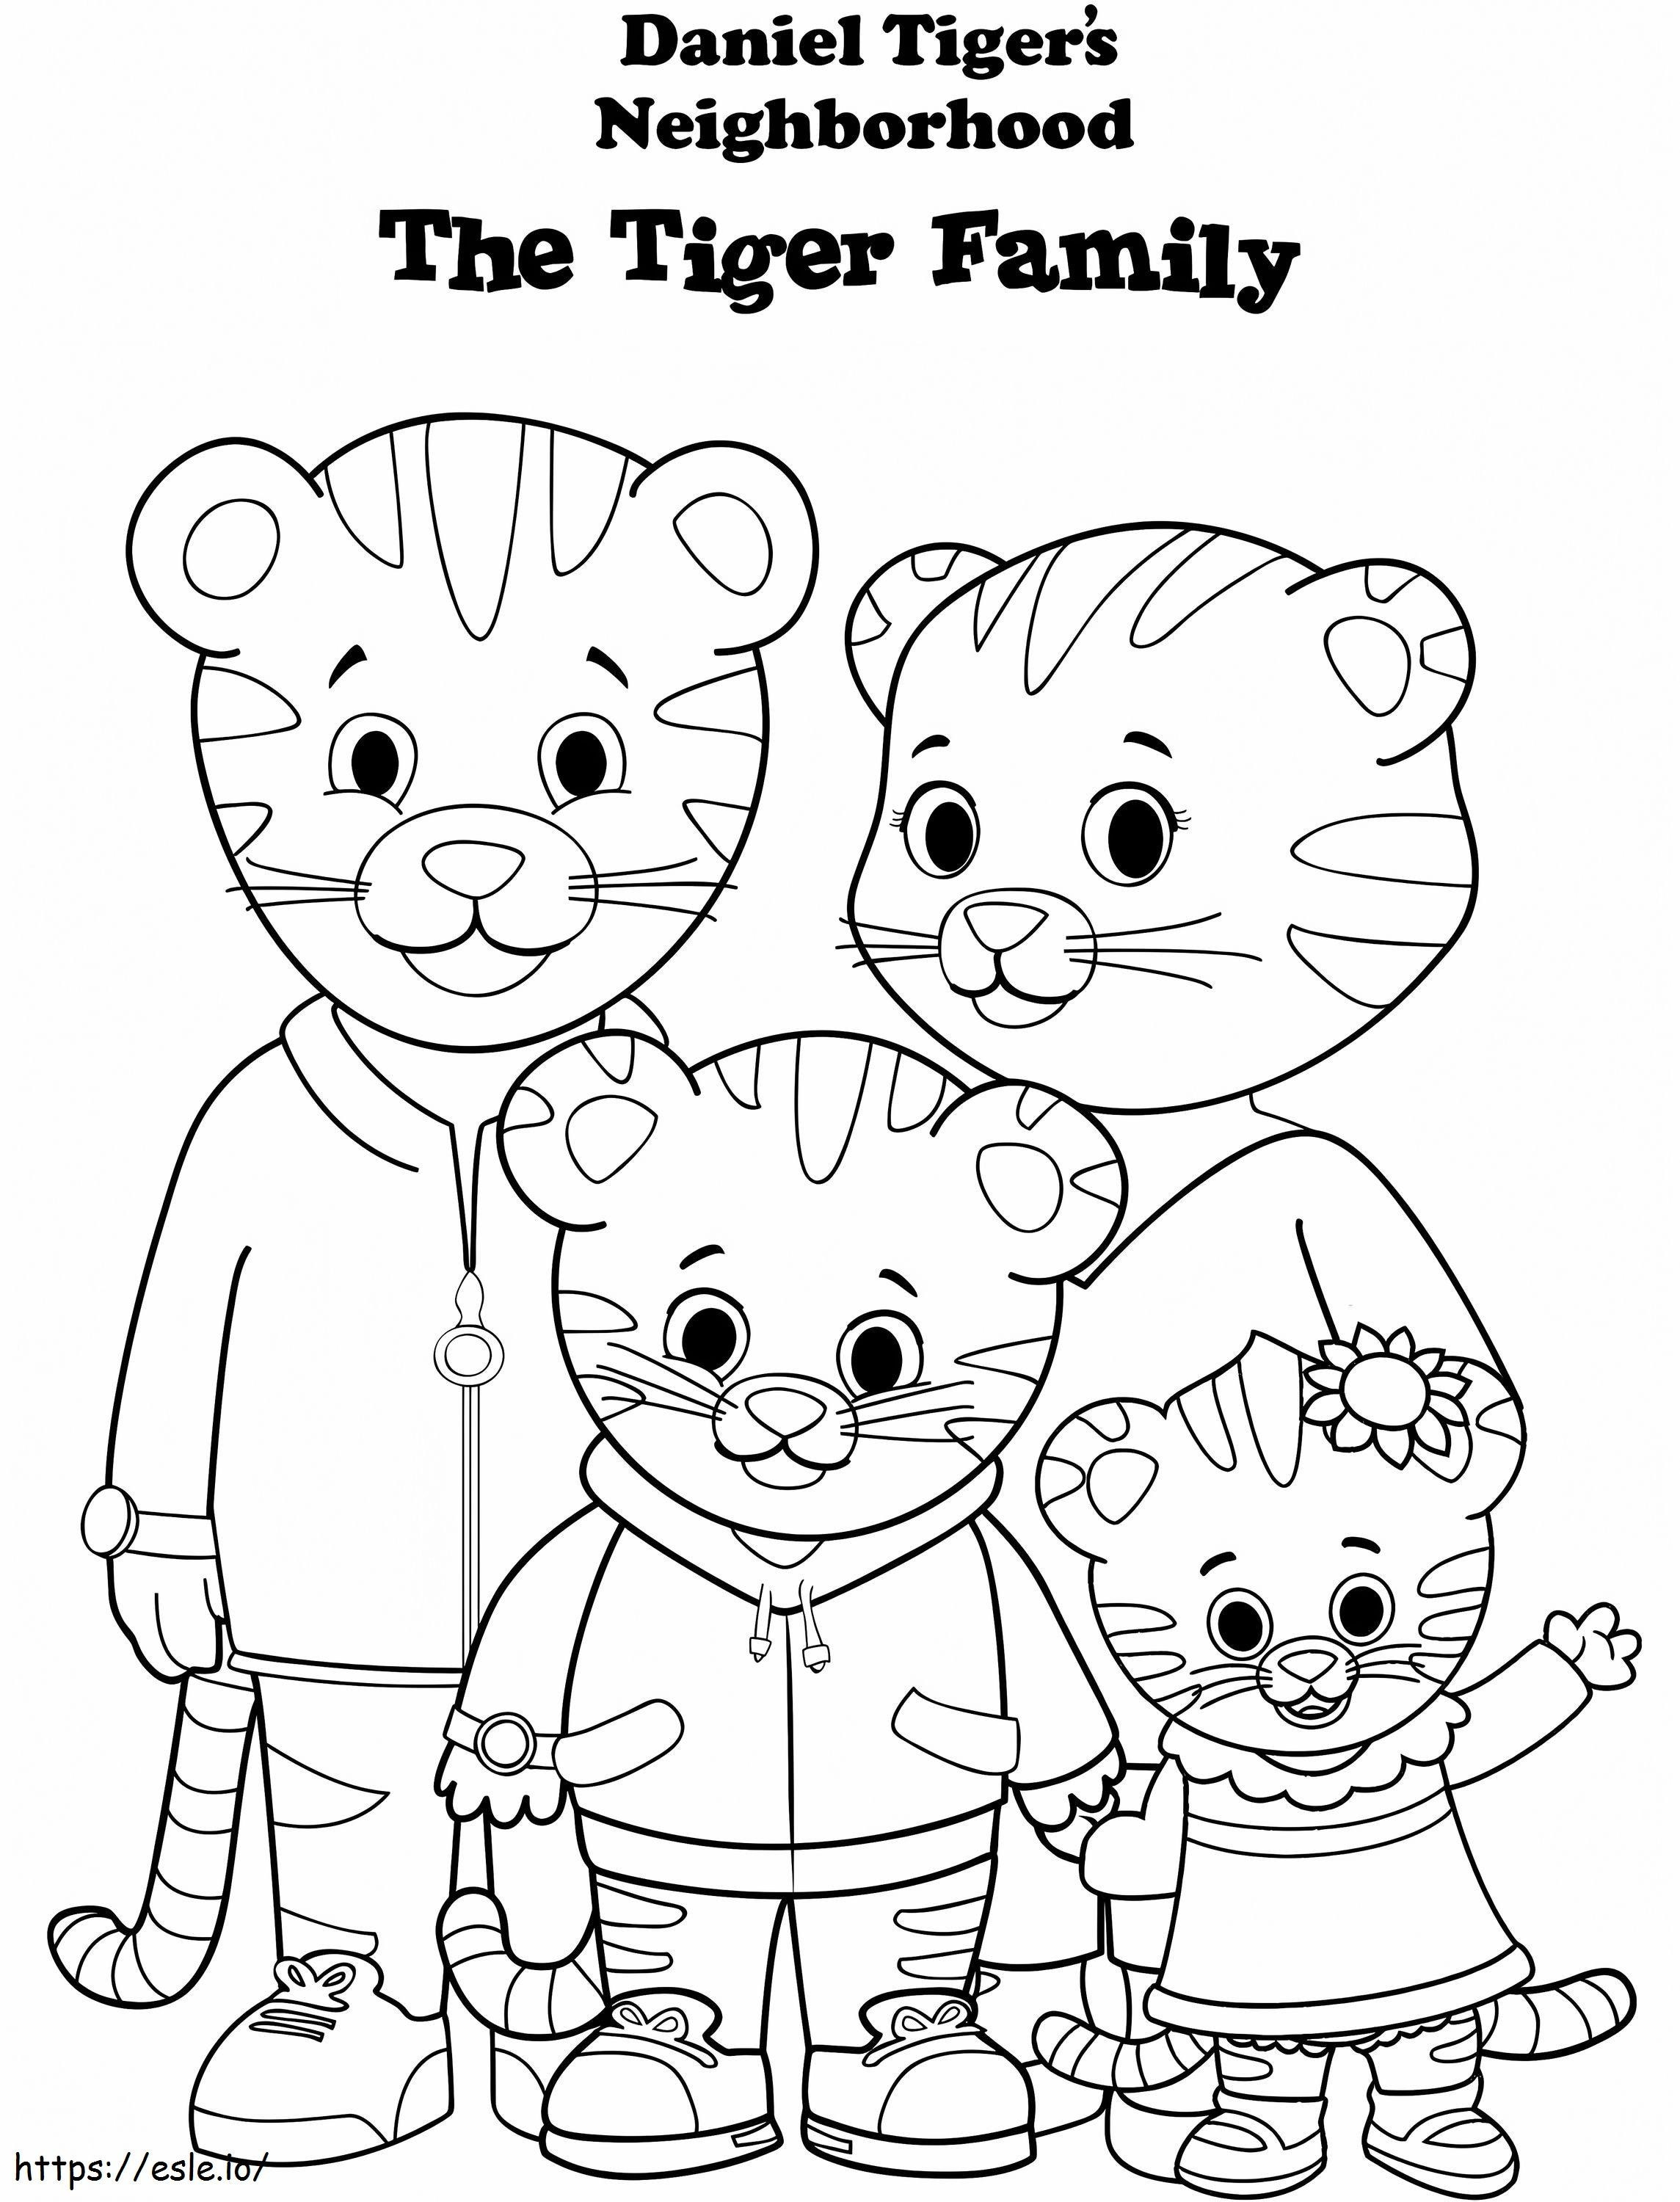 1570118145 Daniel Tiger Family A4 de colorat